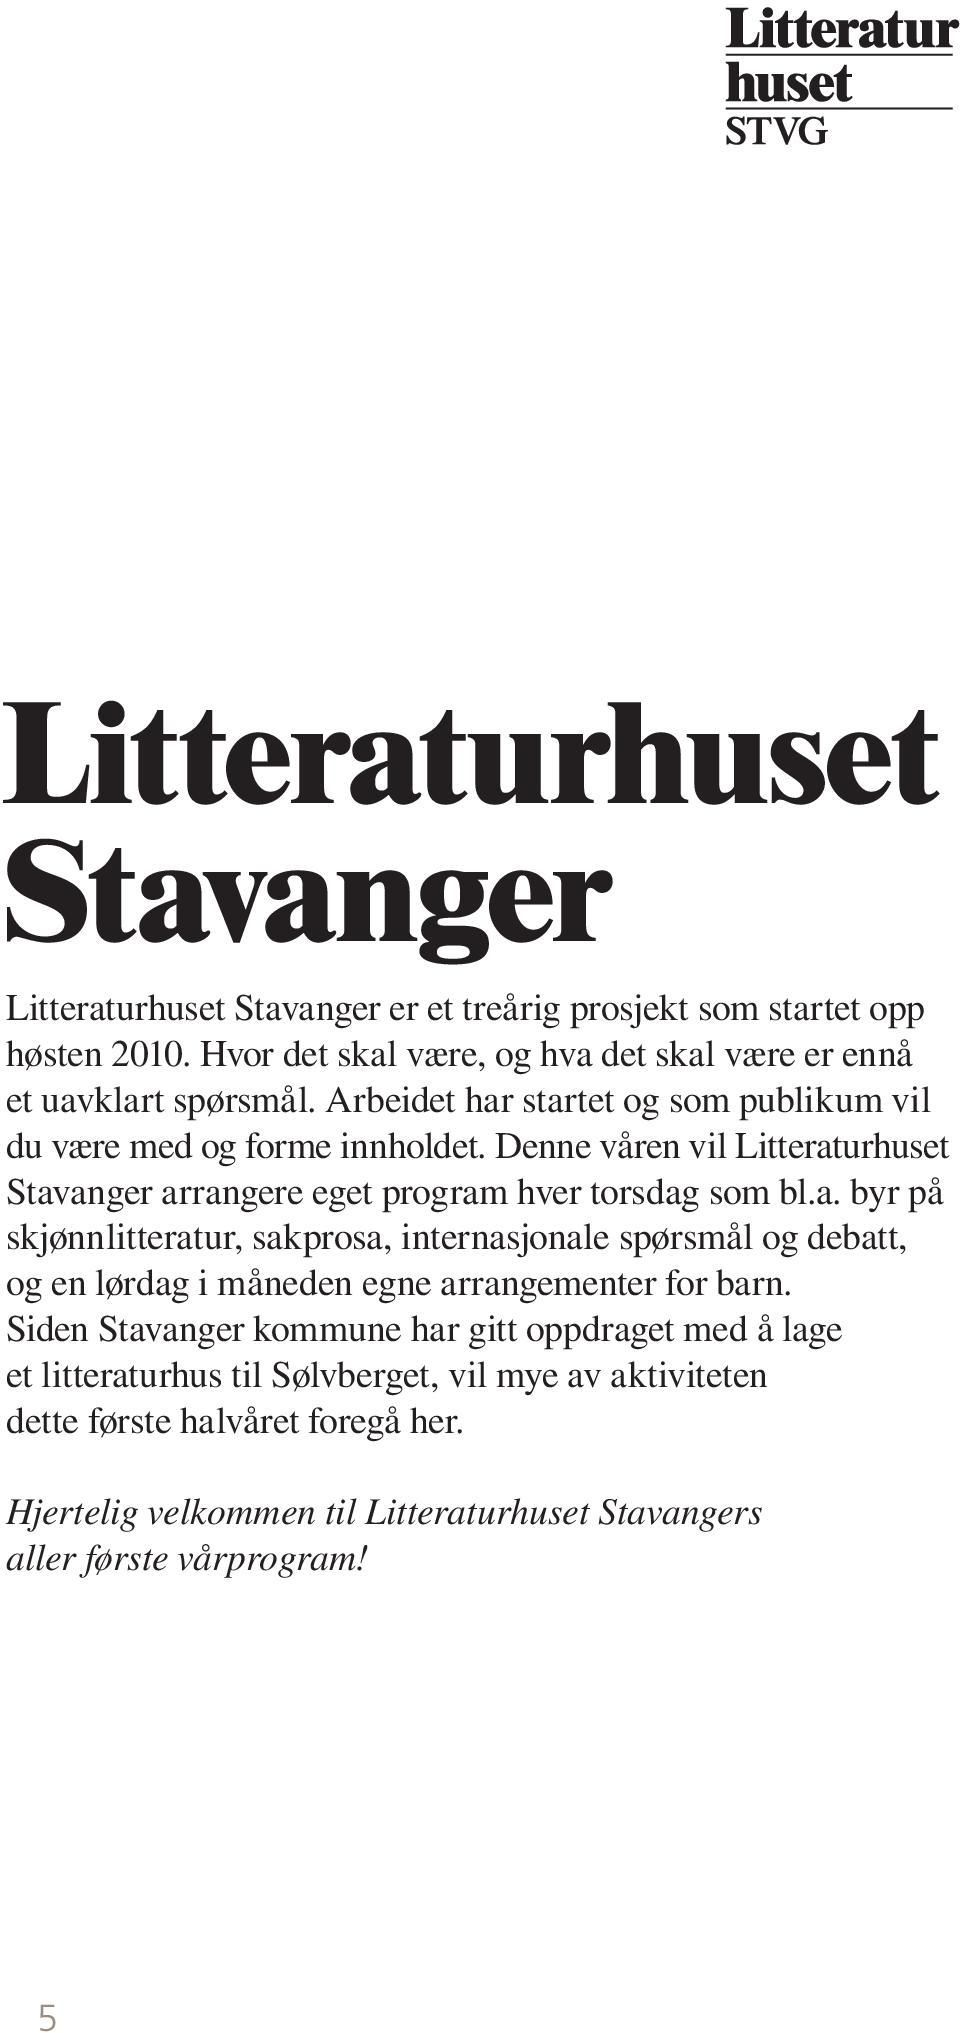 Denne våren vil Litteraturhuset Stavanger arrangere eget program hver torsdag som bl.a. byr på skjønnlitteratur, sakprosa, internasjonale spørsmål og debatt, og en lørdag i måneden egne arrangementer for barn.